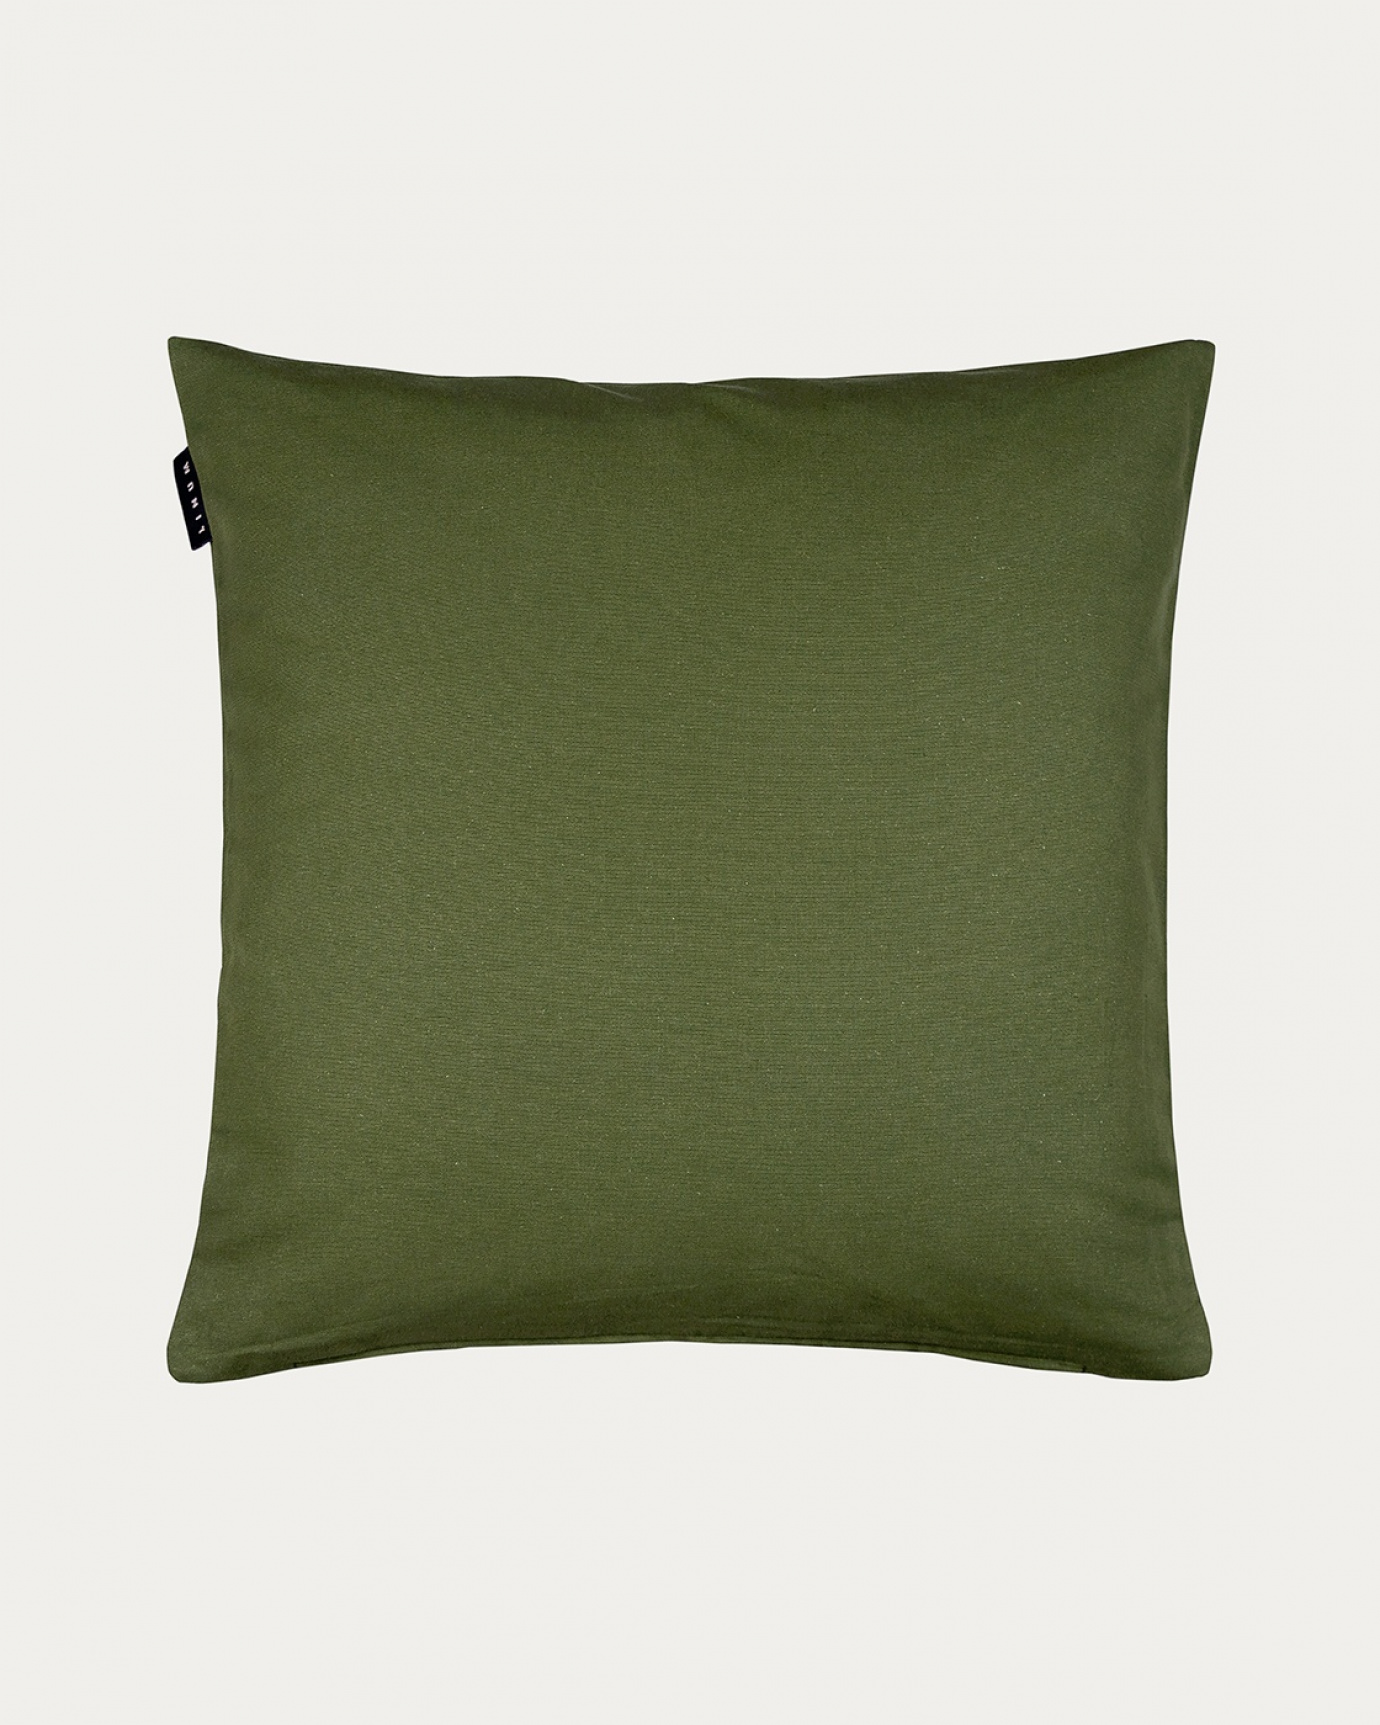 Produktbild mörk olivgrön ANNABELL kuddfodral av mjuk bomull från LINUM DESIGN. Storlek 50x50 cm.